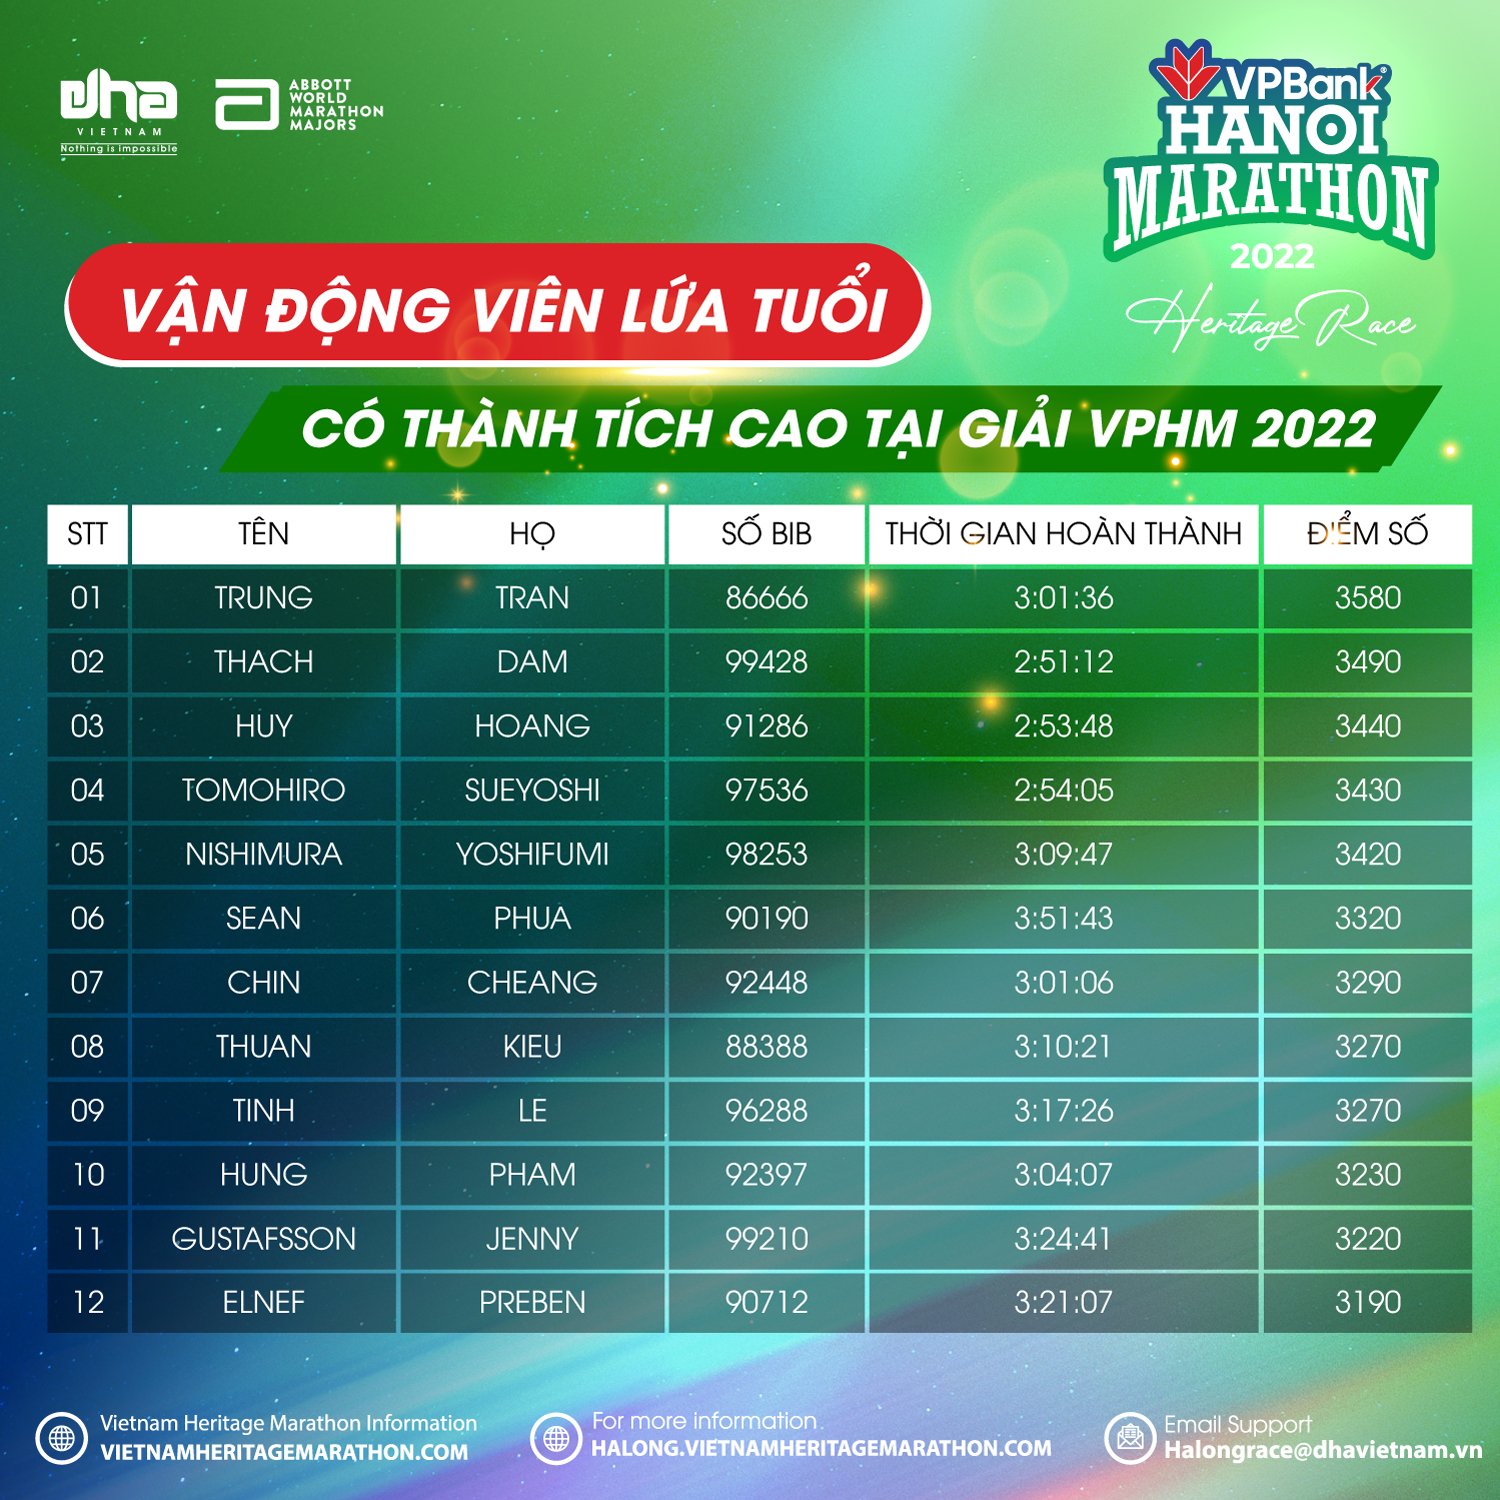 Runner Của VPBank Hanoi Marathon 2022 Có Thể Thi Đấu Ở Mỹ